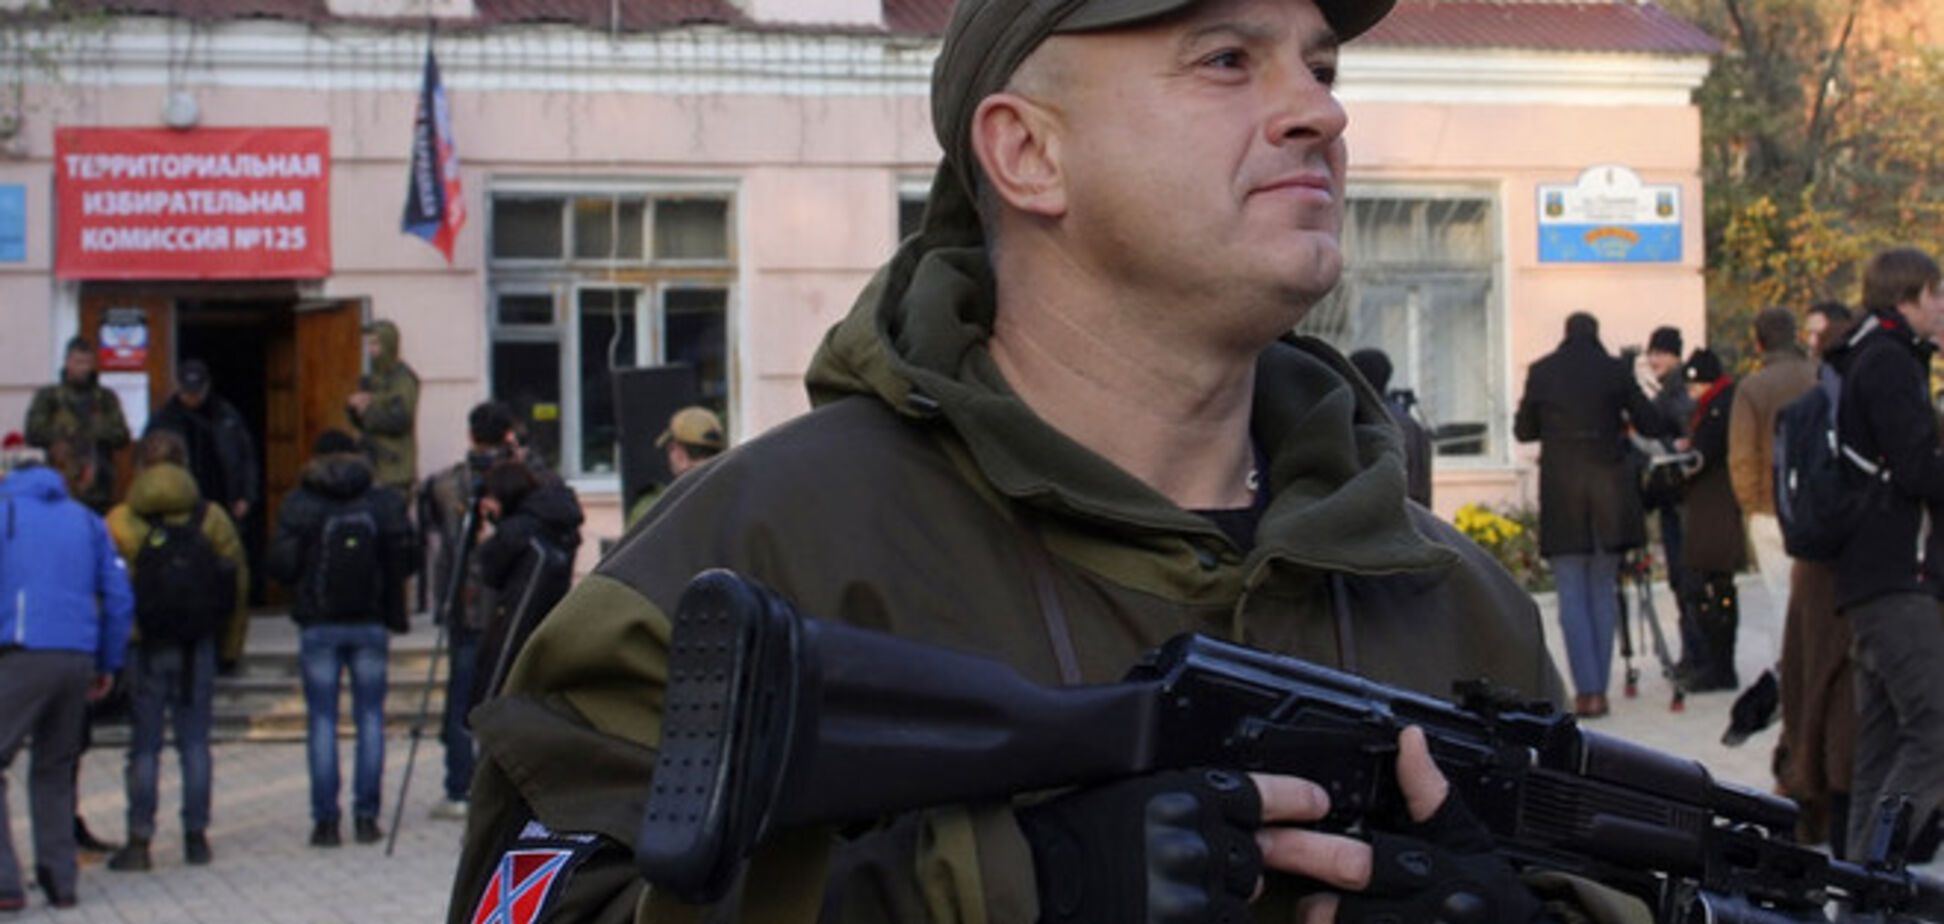 Партия войны хочет взять реванш за провал проекта 'Новороссия' - Немцов